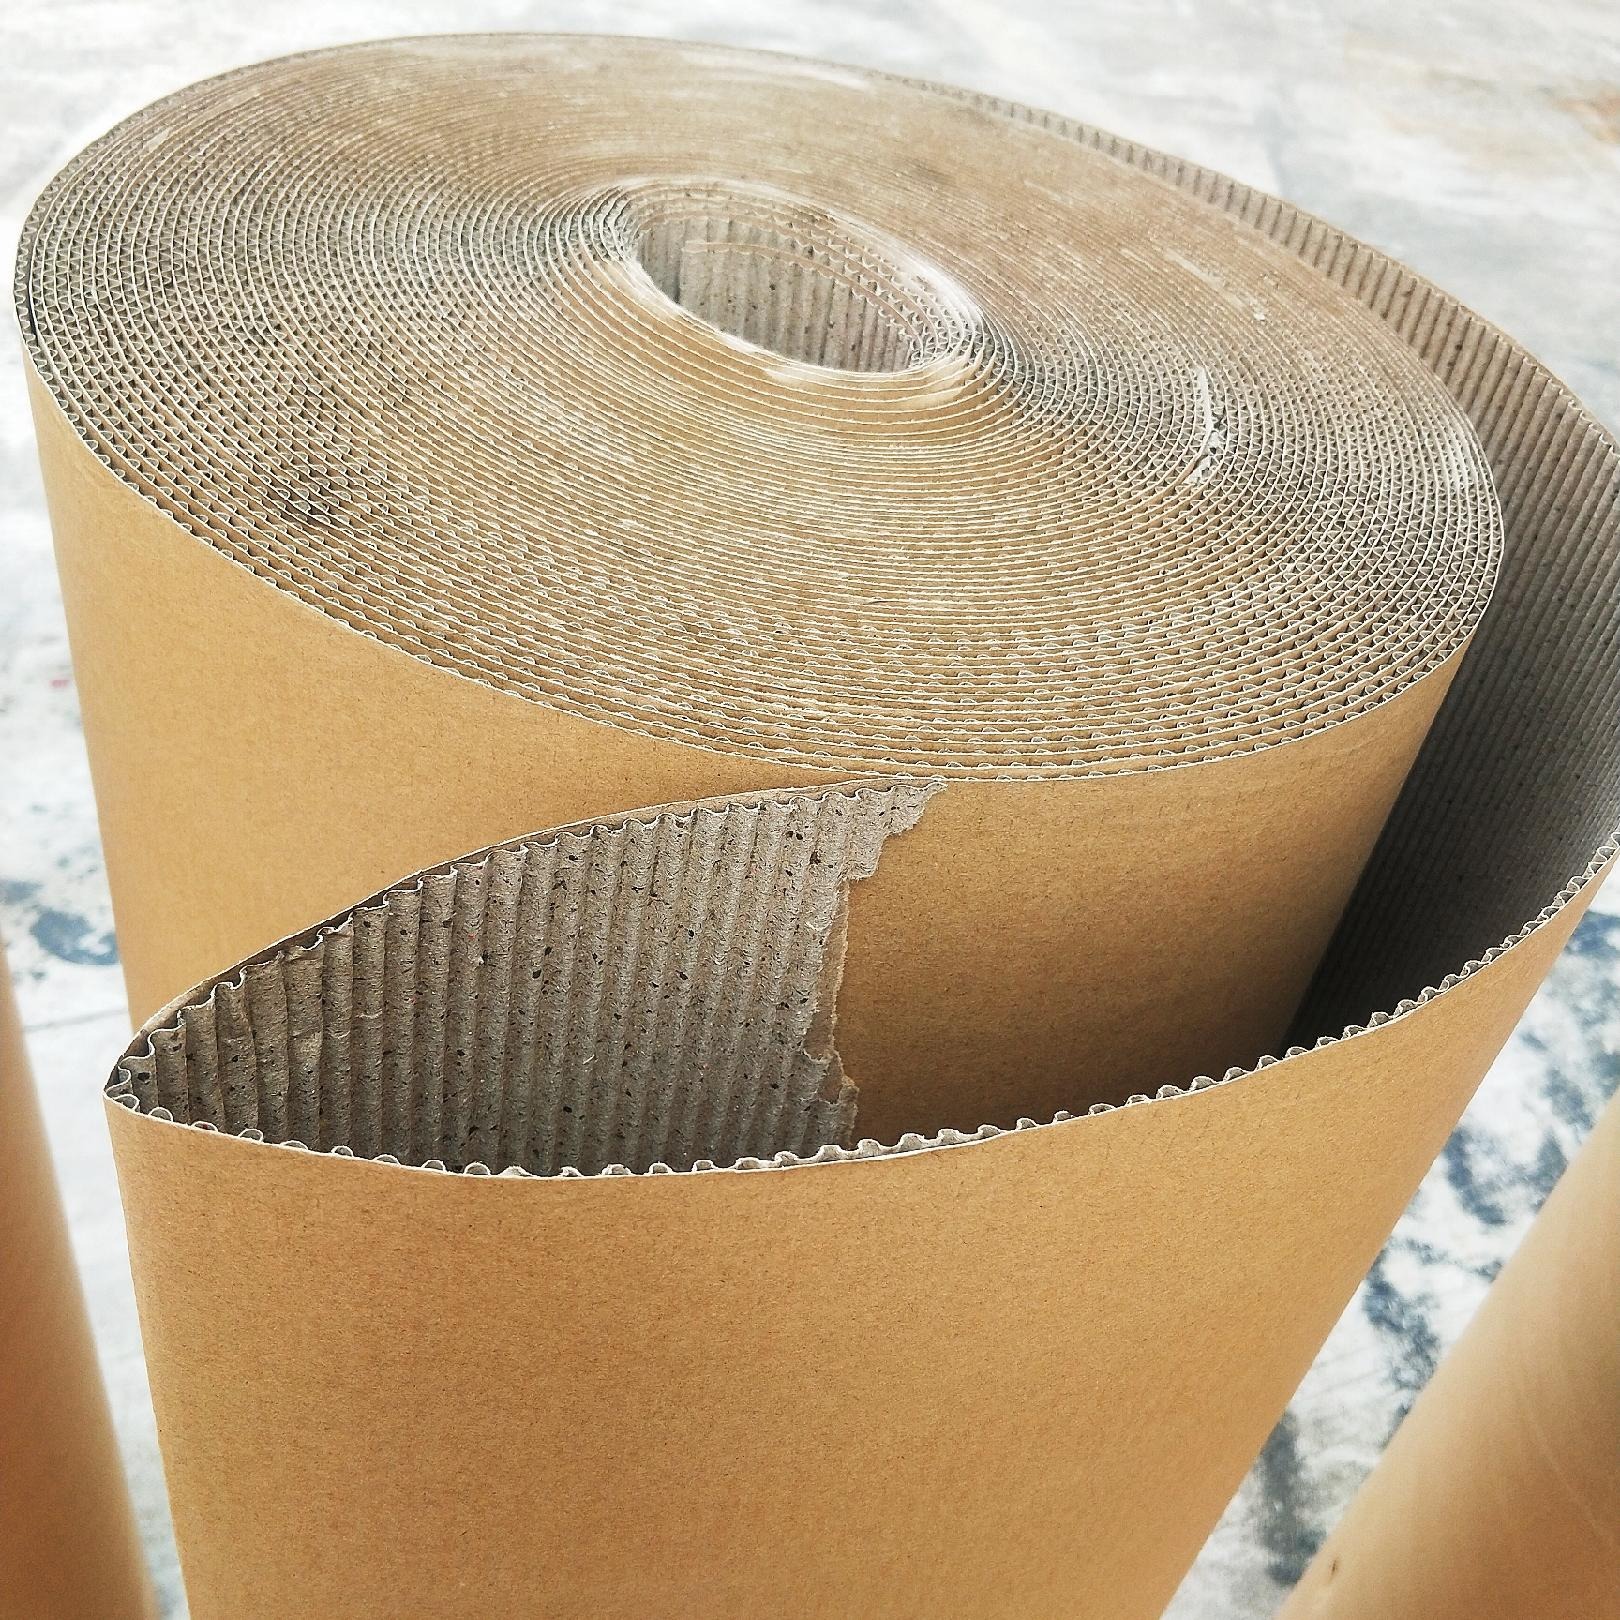 展飞牌瓦楞纸  瓦楞纸生产厂家双层见坑纸  1.4米包装纸厂家 1.4米打包纸 瓦楞卷纸1250图片